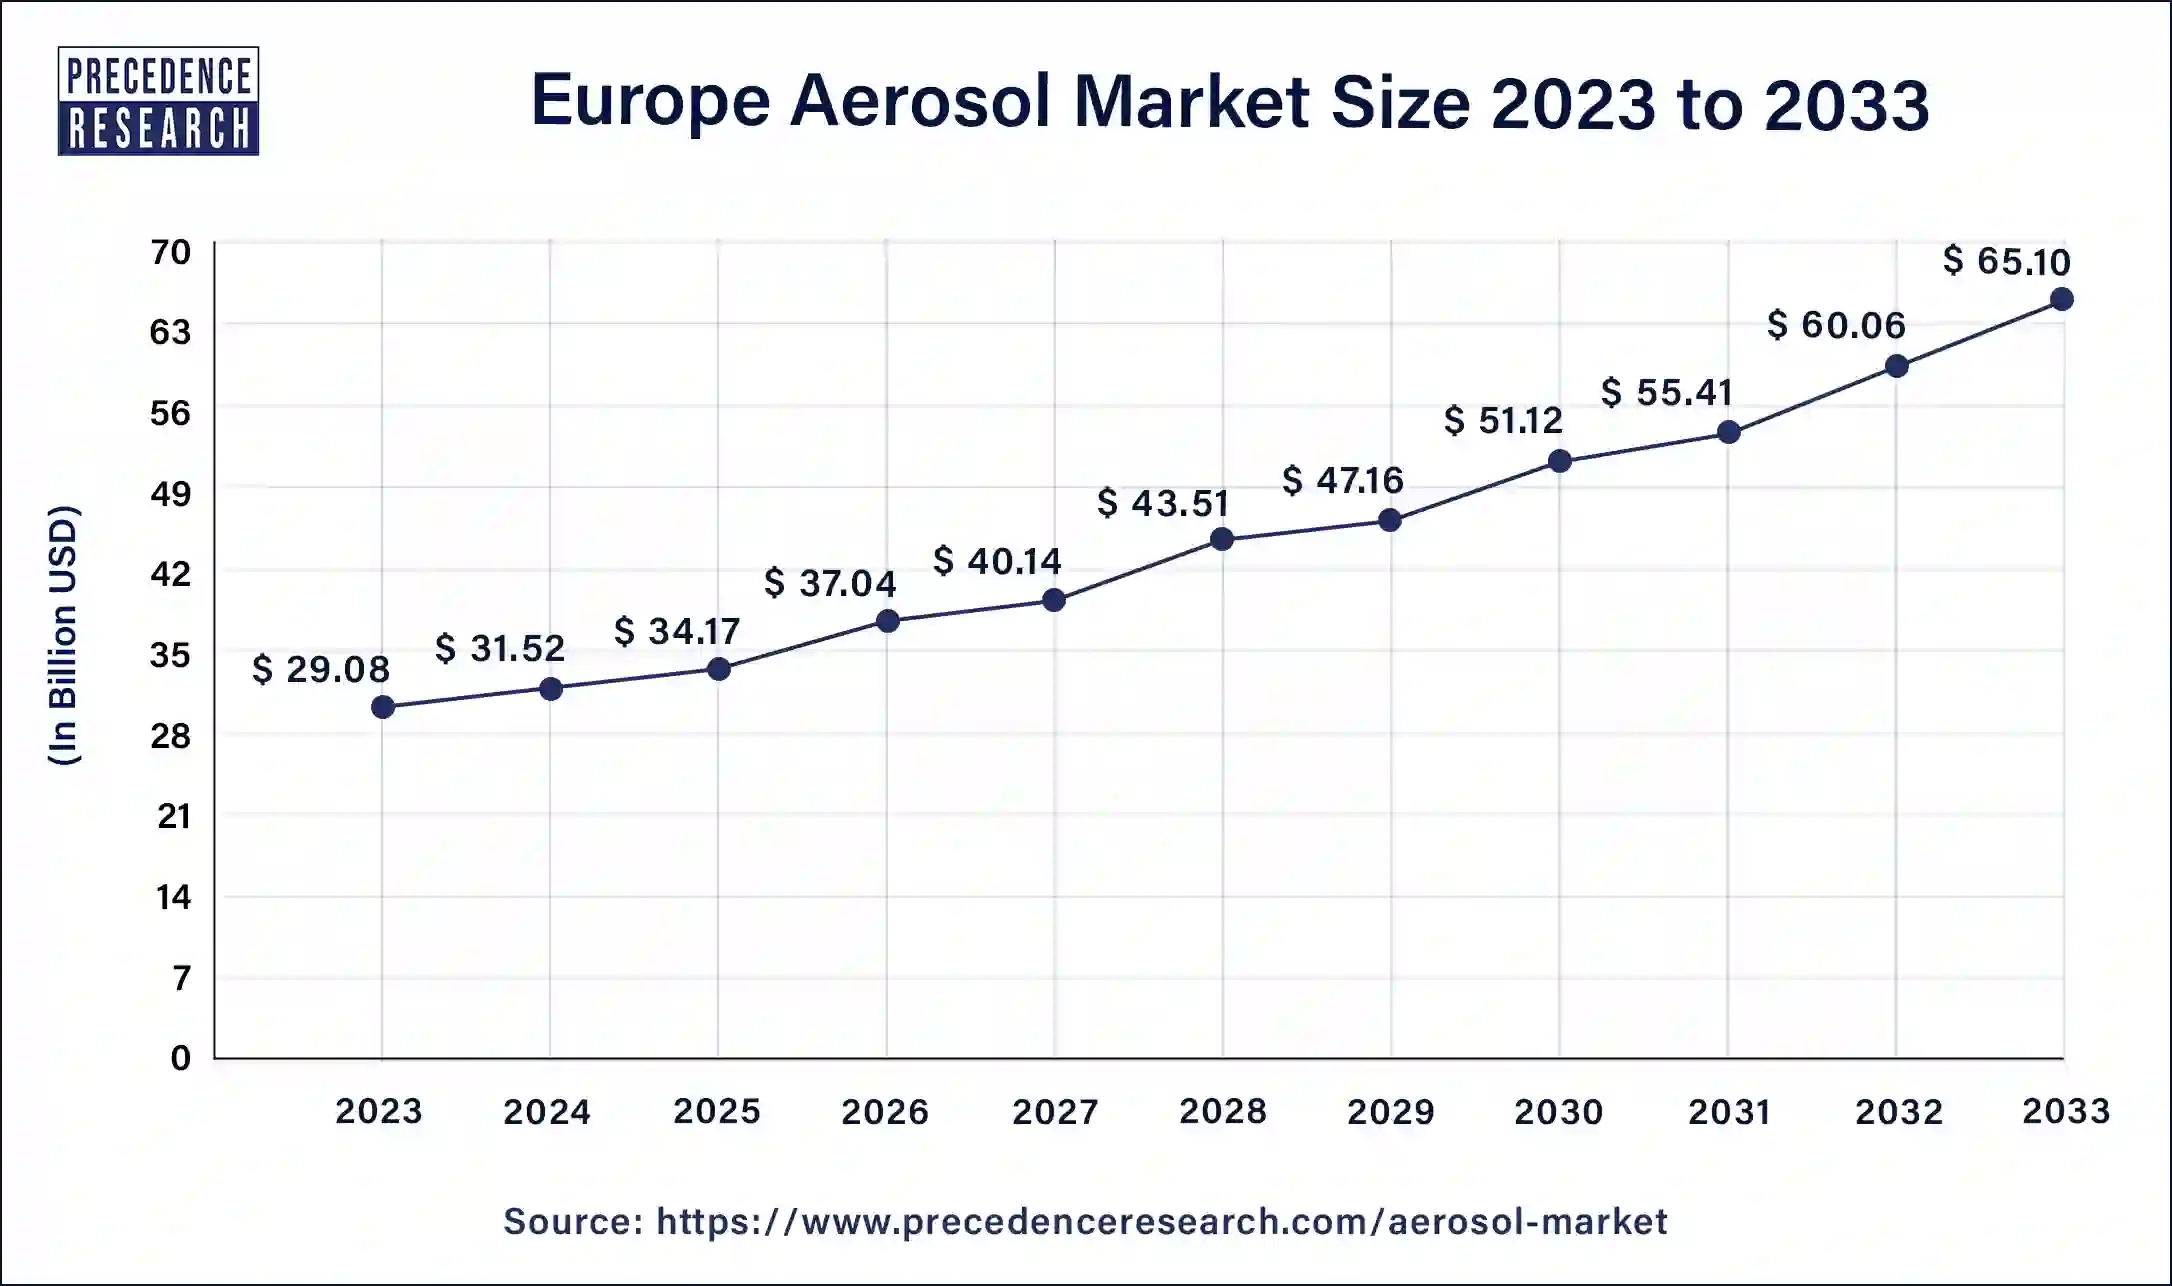 Europe Aerosol Market Size 2024 to 2033